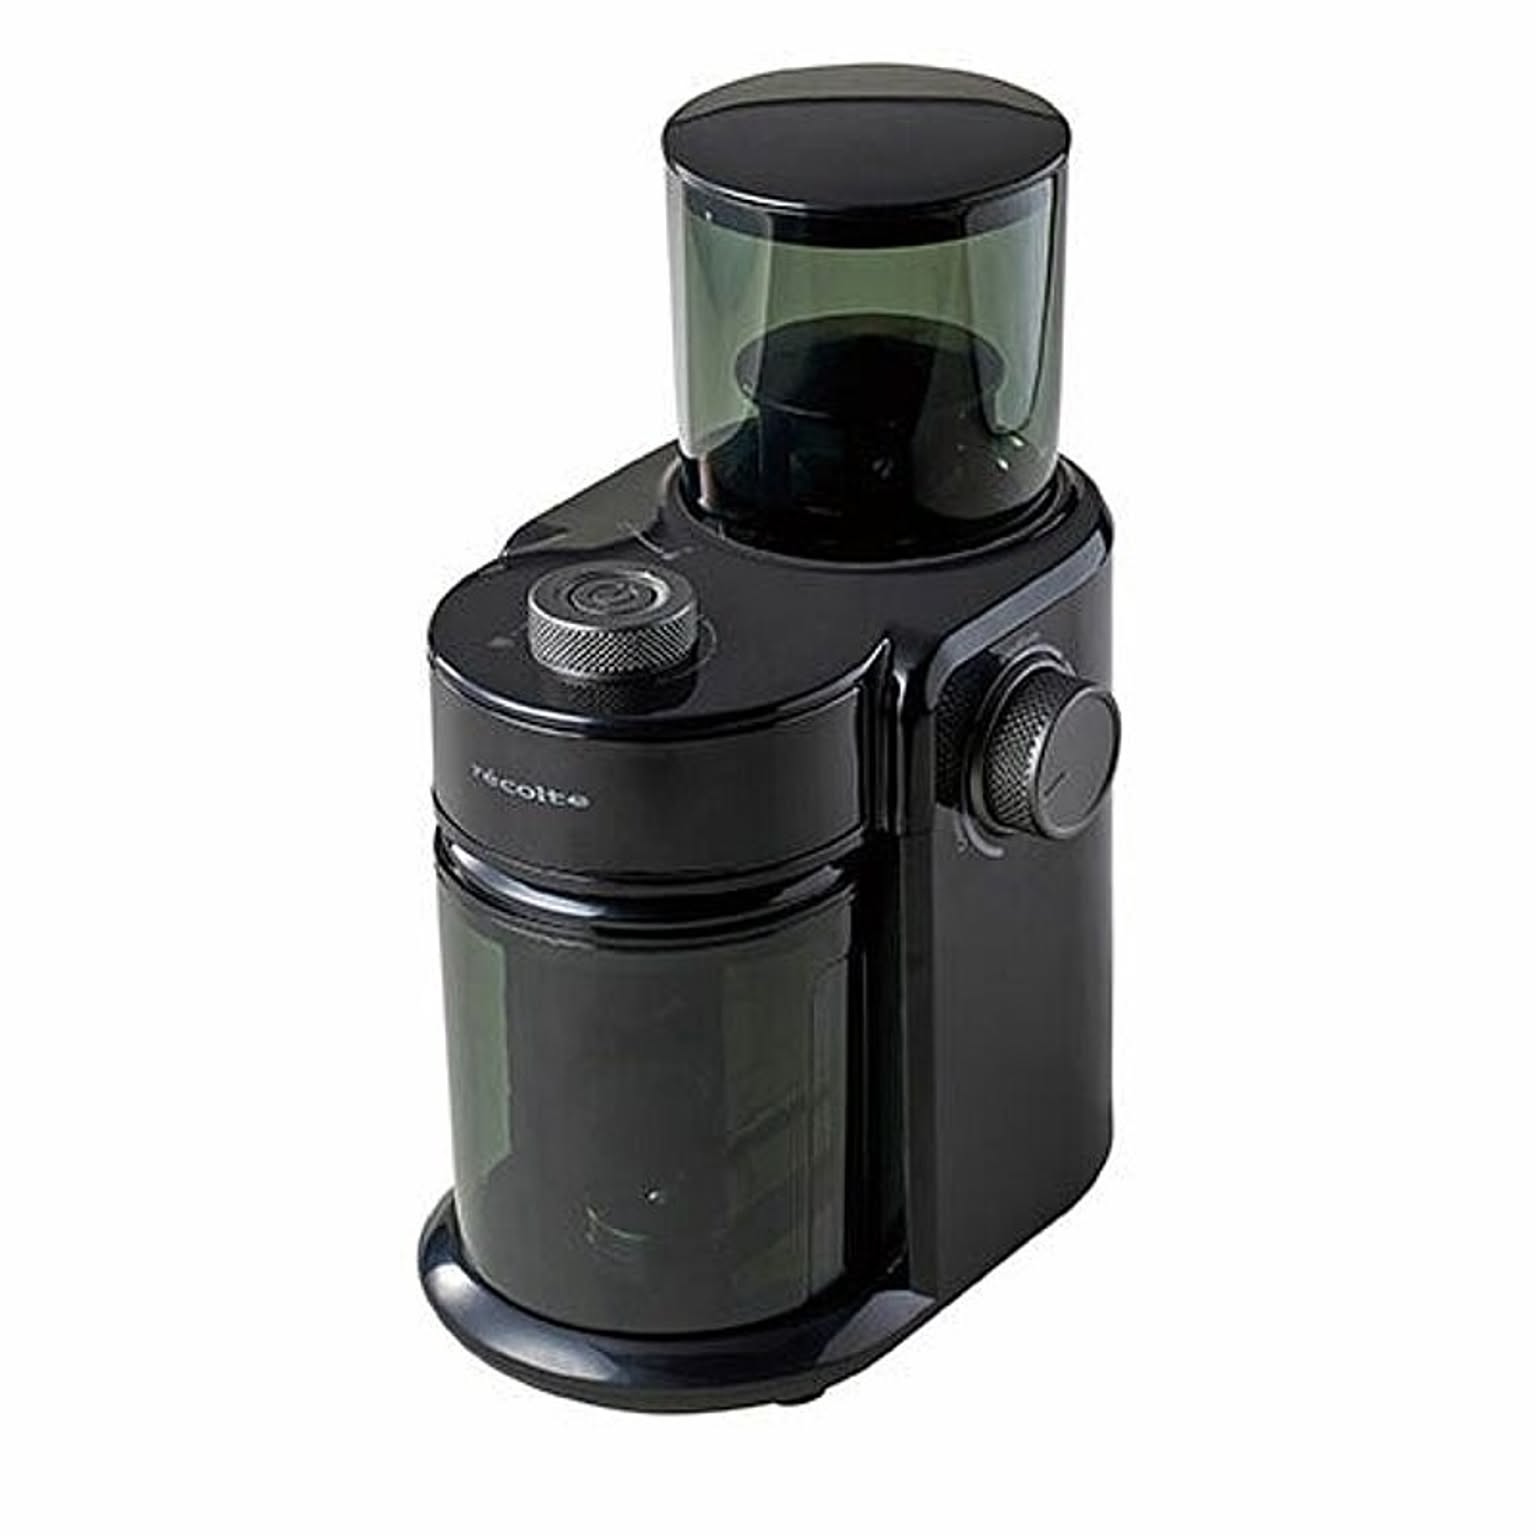 Coffee Grinder コーヒーグラインダー RCM-2 電動ミル/コーヒーミル/電動グラインダー/フラットカッター式